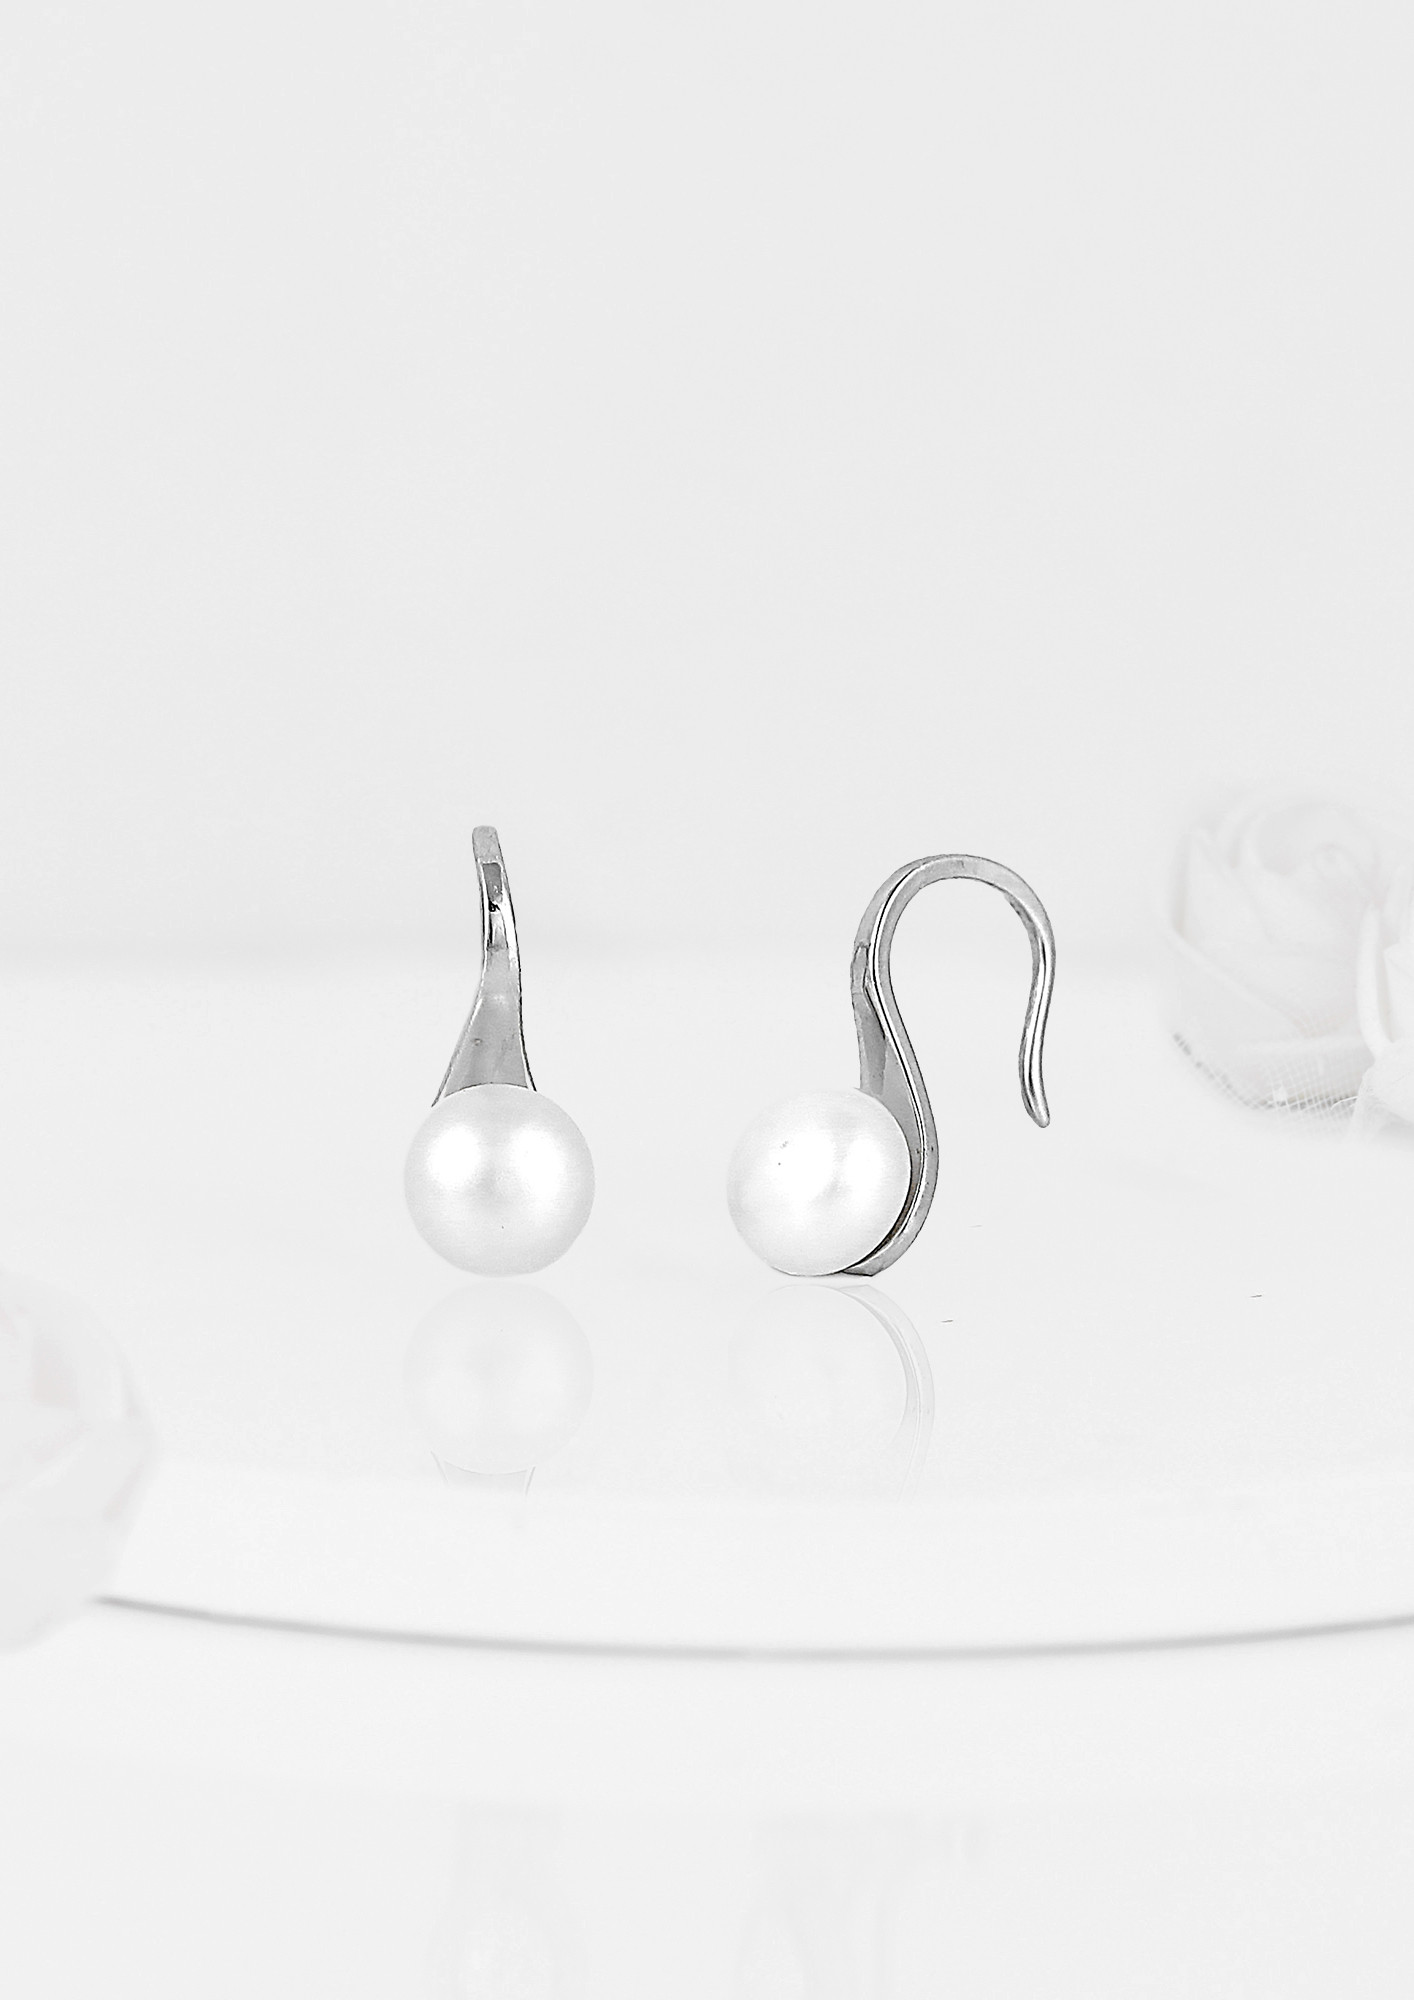 Buy Silver Earrings for Women by Iski Uski Online  Ajiocom